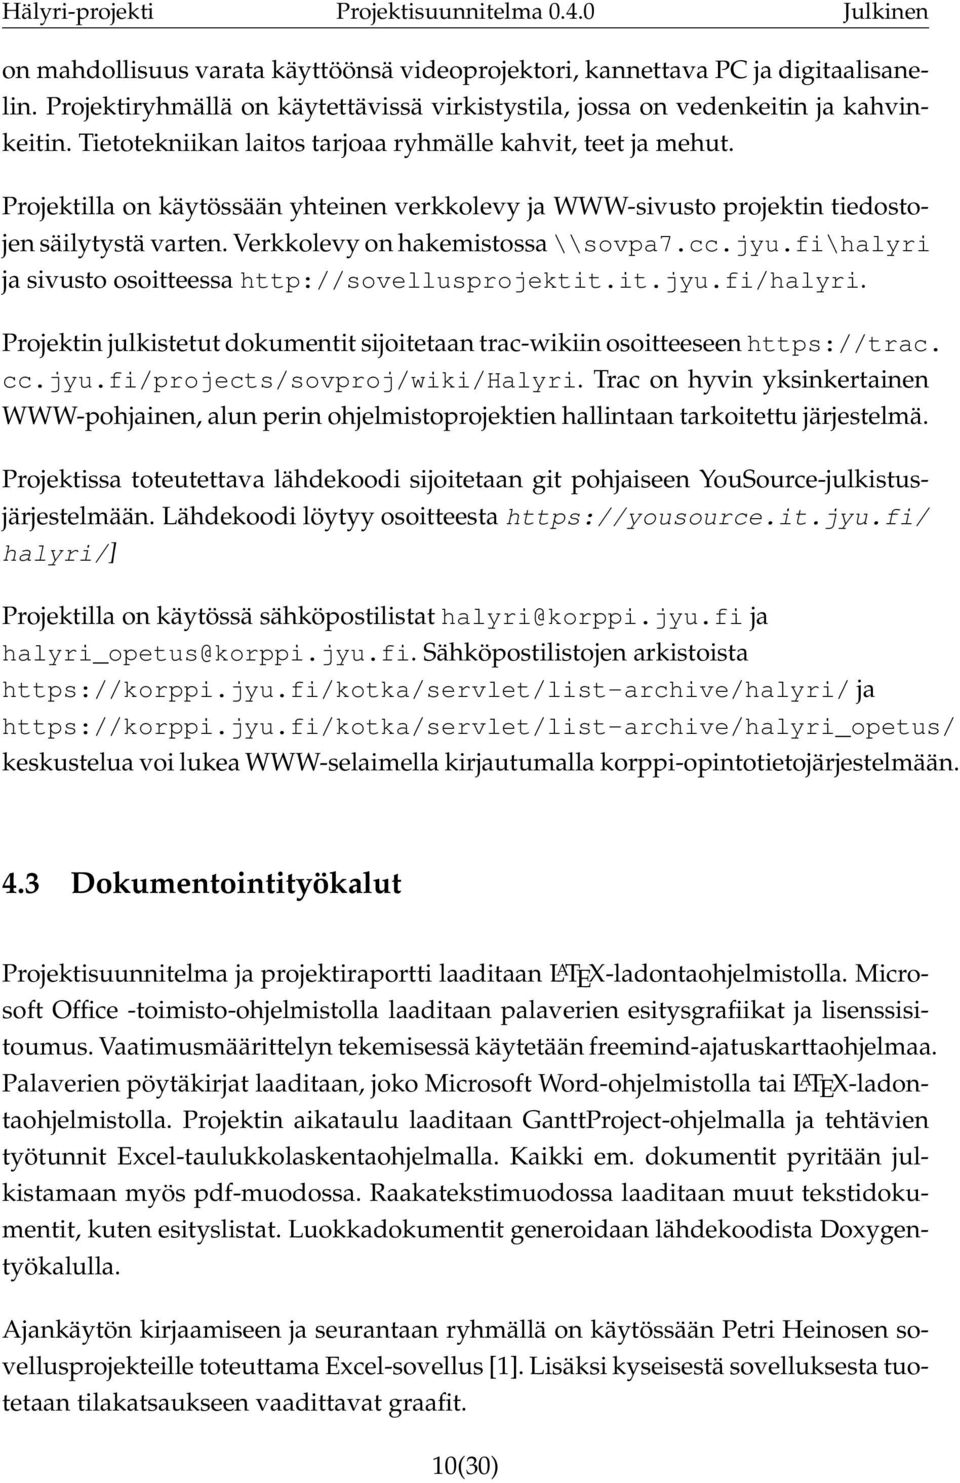 cc.jyu.fi\halyri ja sivusto osoitteessa http://sovellusprojektit.it.jyu.fi/halyri. Projektin julkistetut dokumentit sijoitetaan trac-wikiin osoitteeseen https://trac. cc.jyu.fi/projects/sovproj/wiki/halyri.